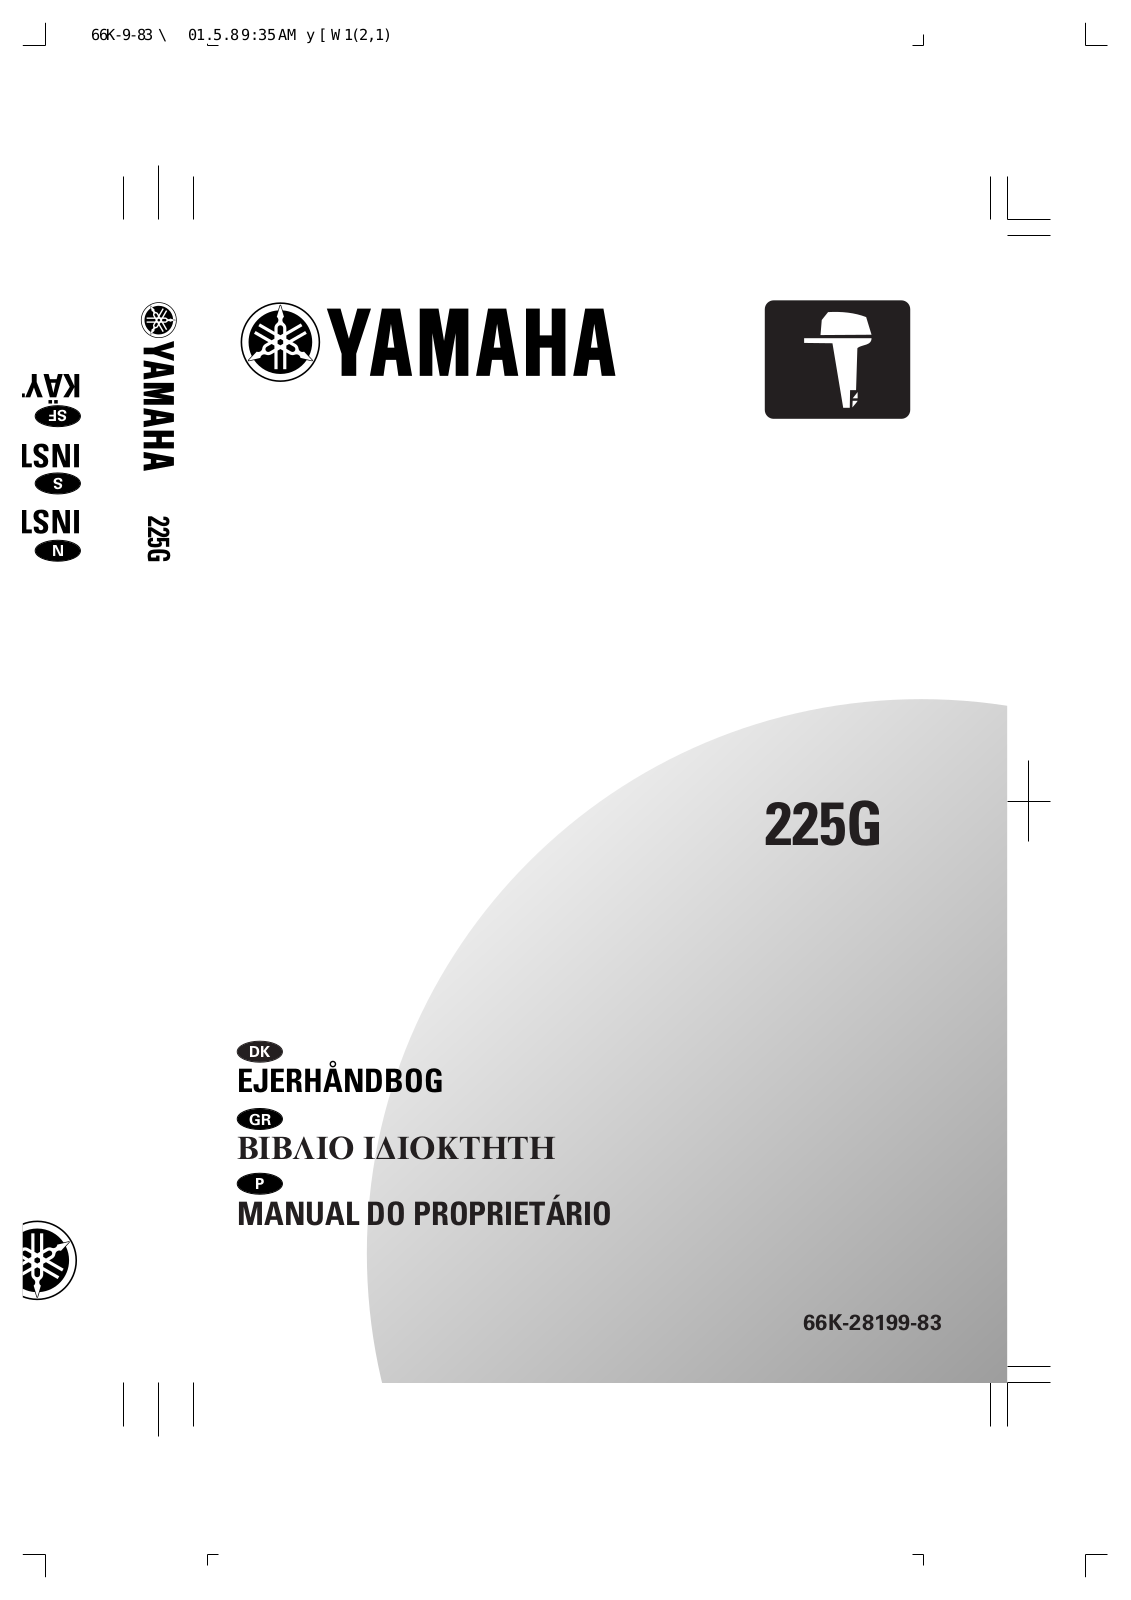 Yamaha 225G User Manual